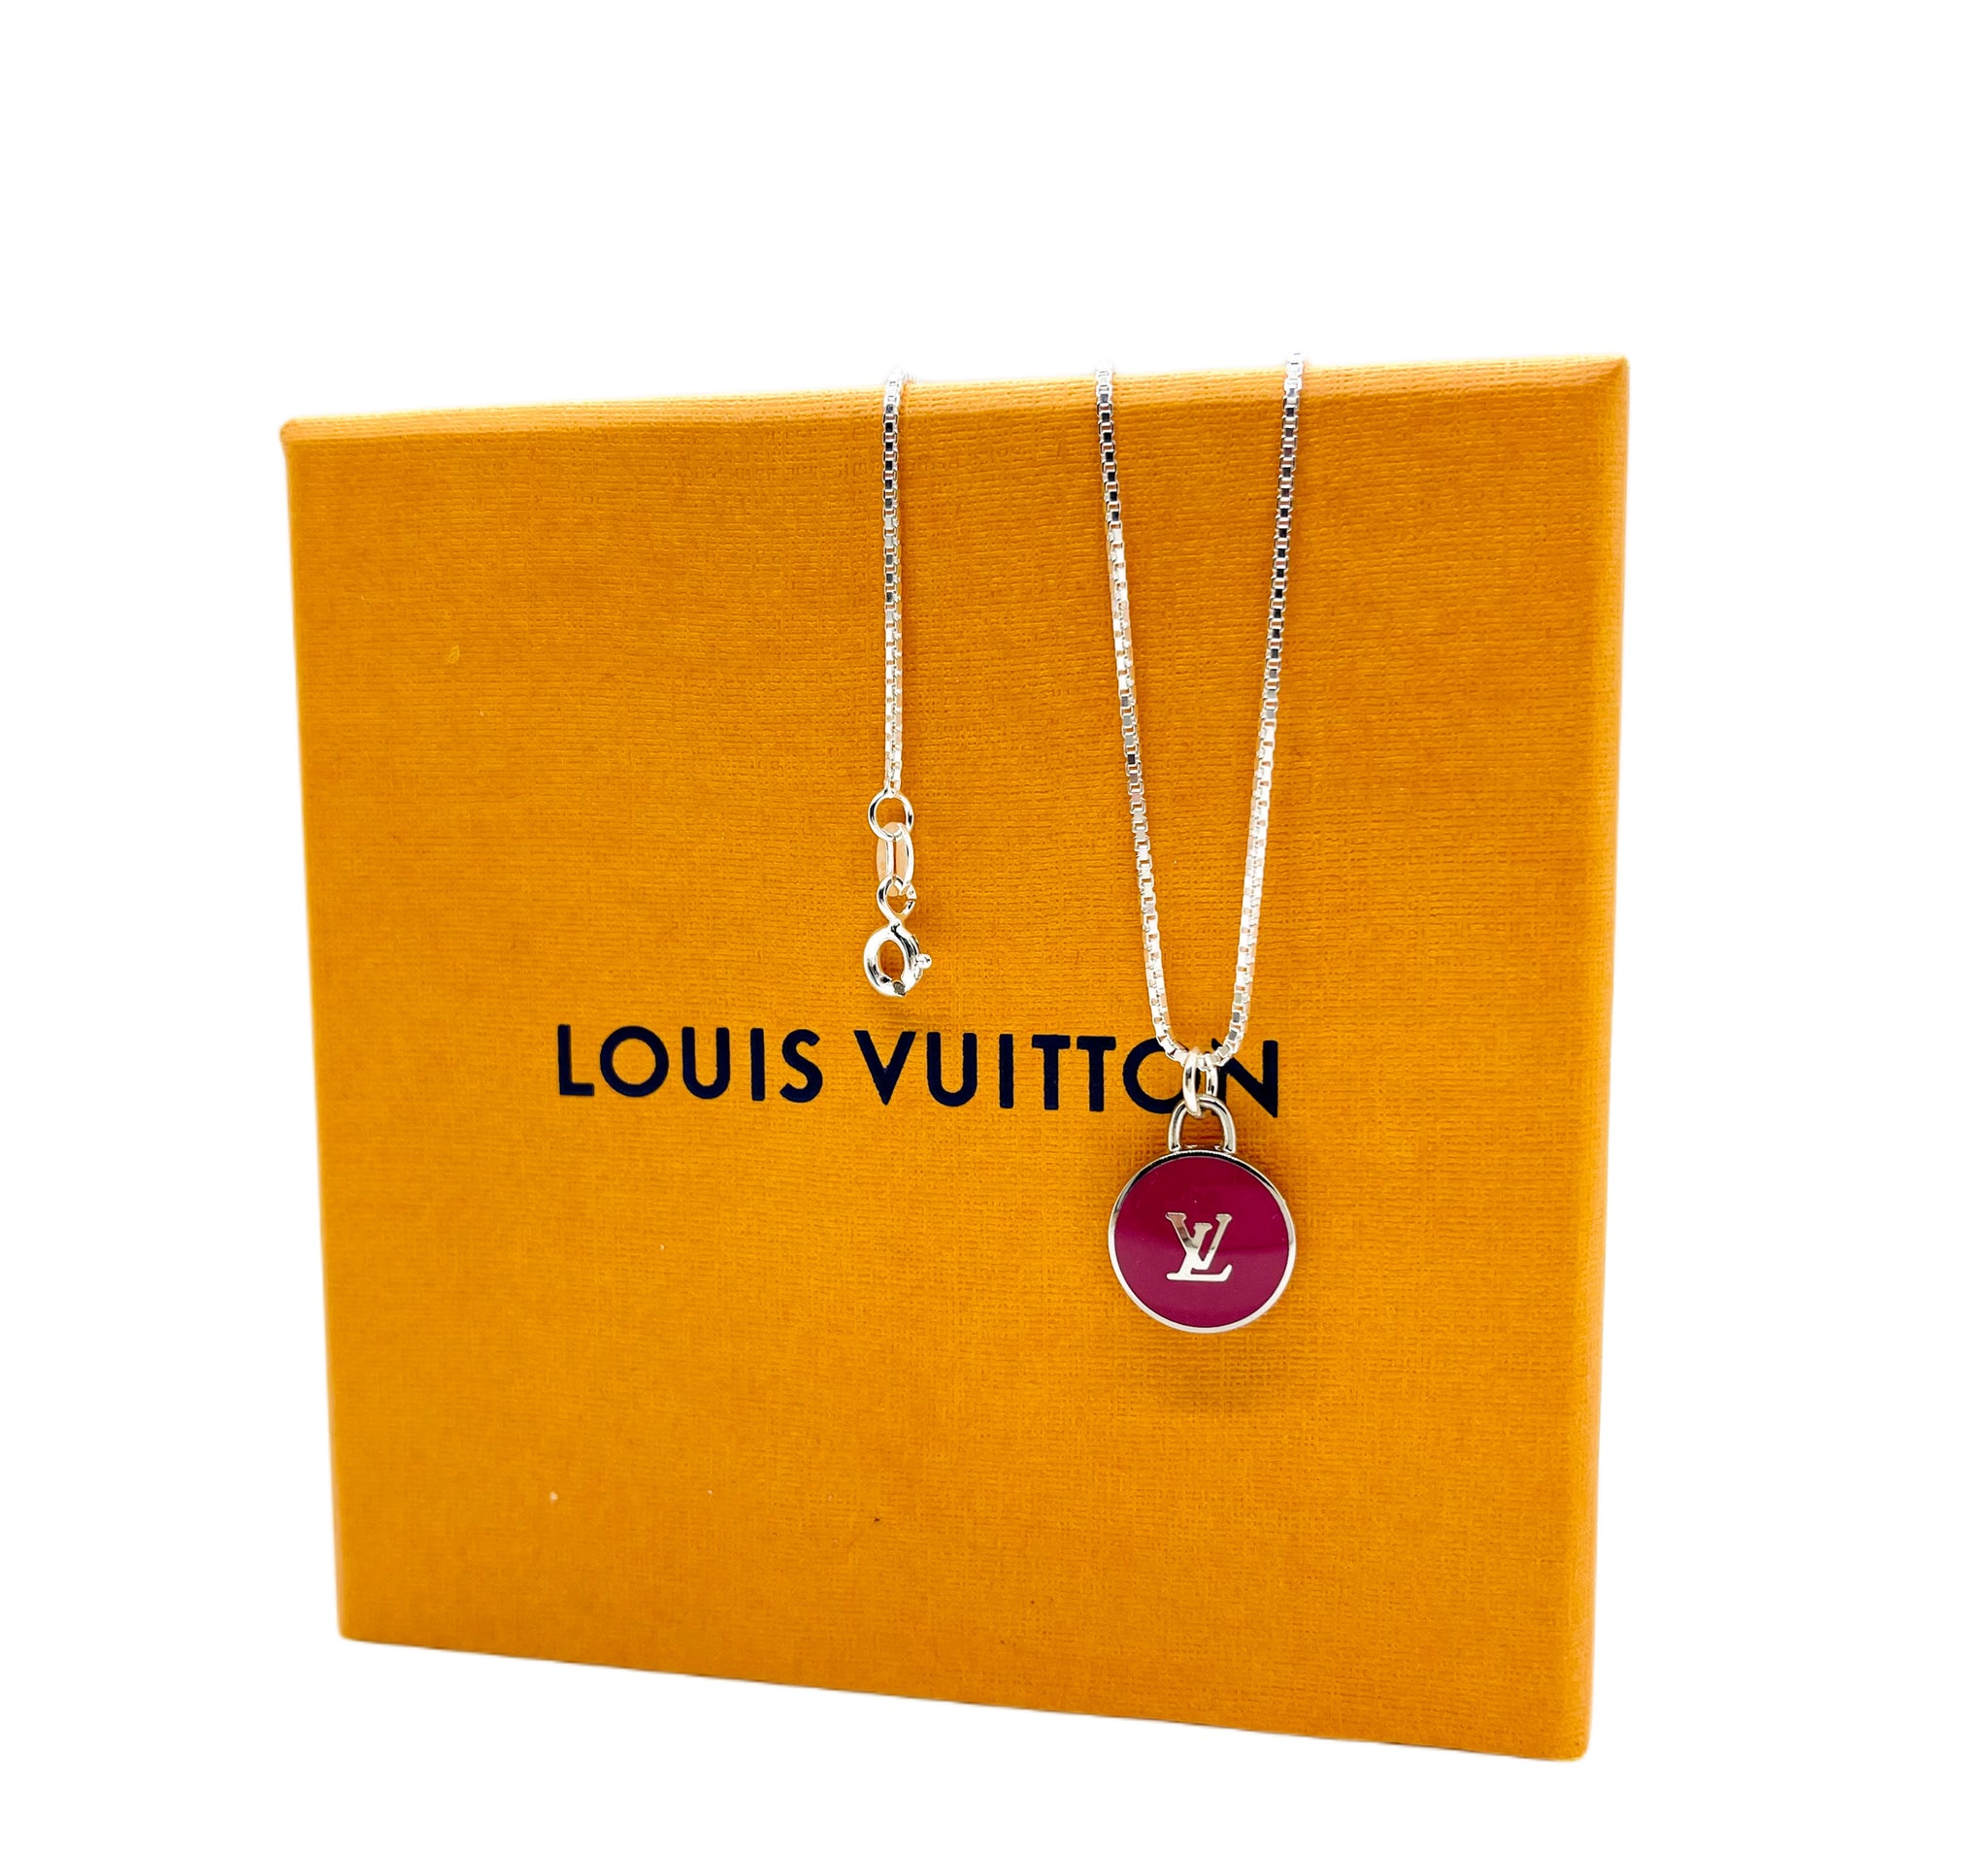 Repurposed Silver & Magenta Louis Vuitton Signature Logo Necklace